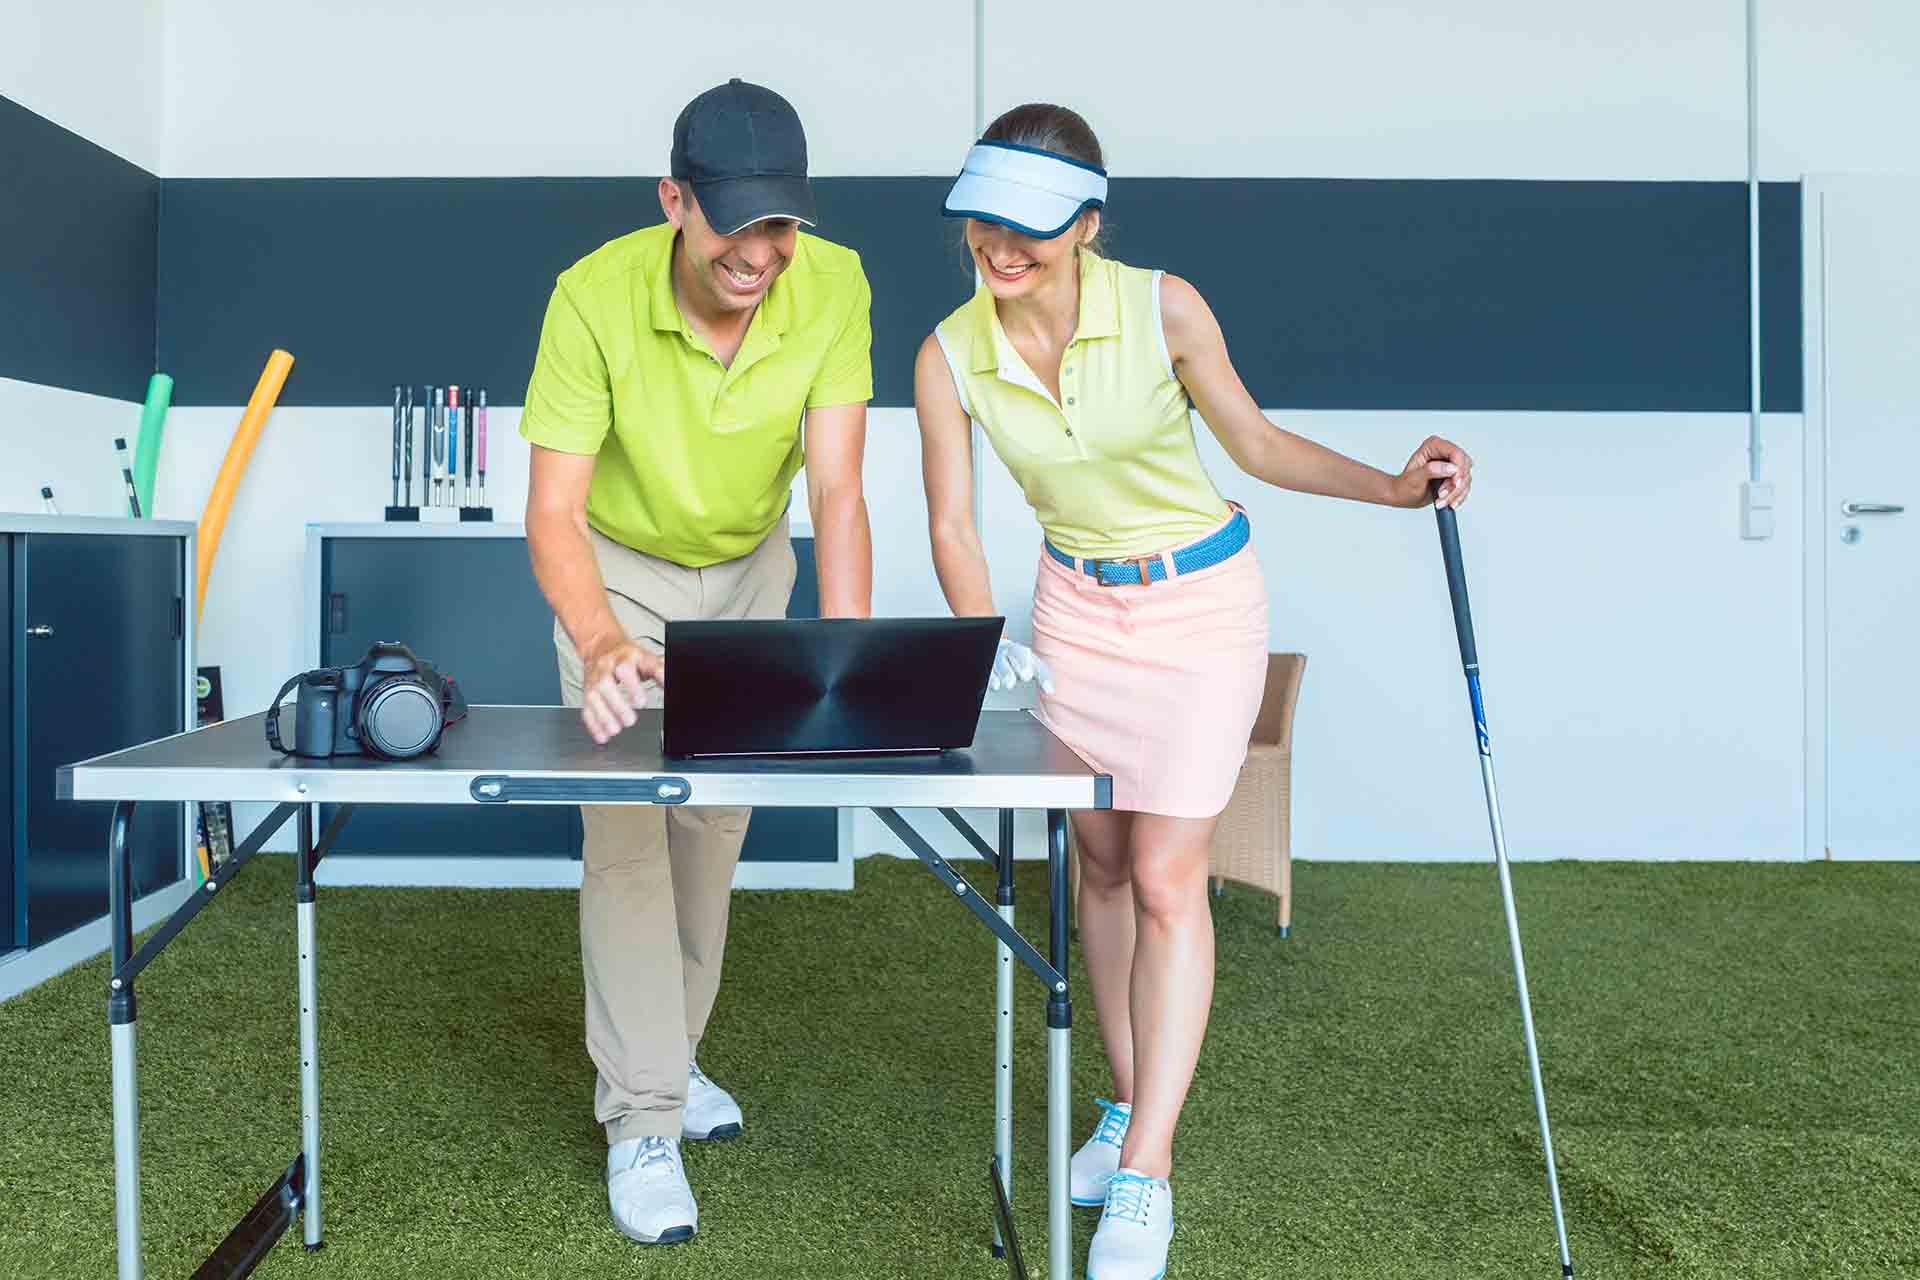 Analyse des performance au golf durant l'entrainement